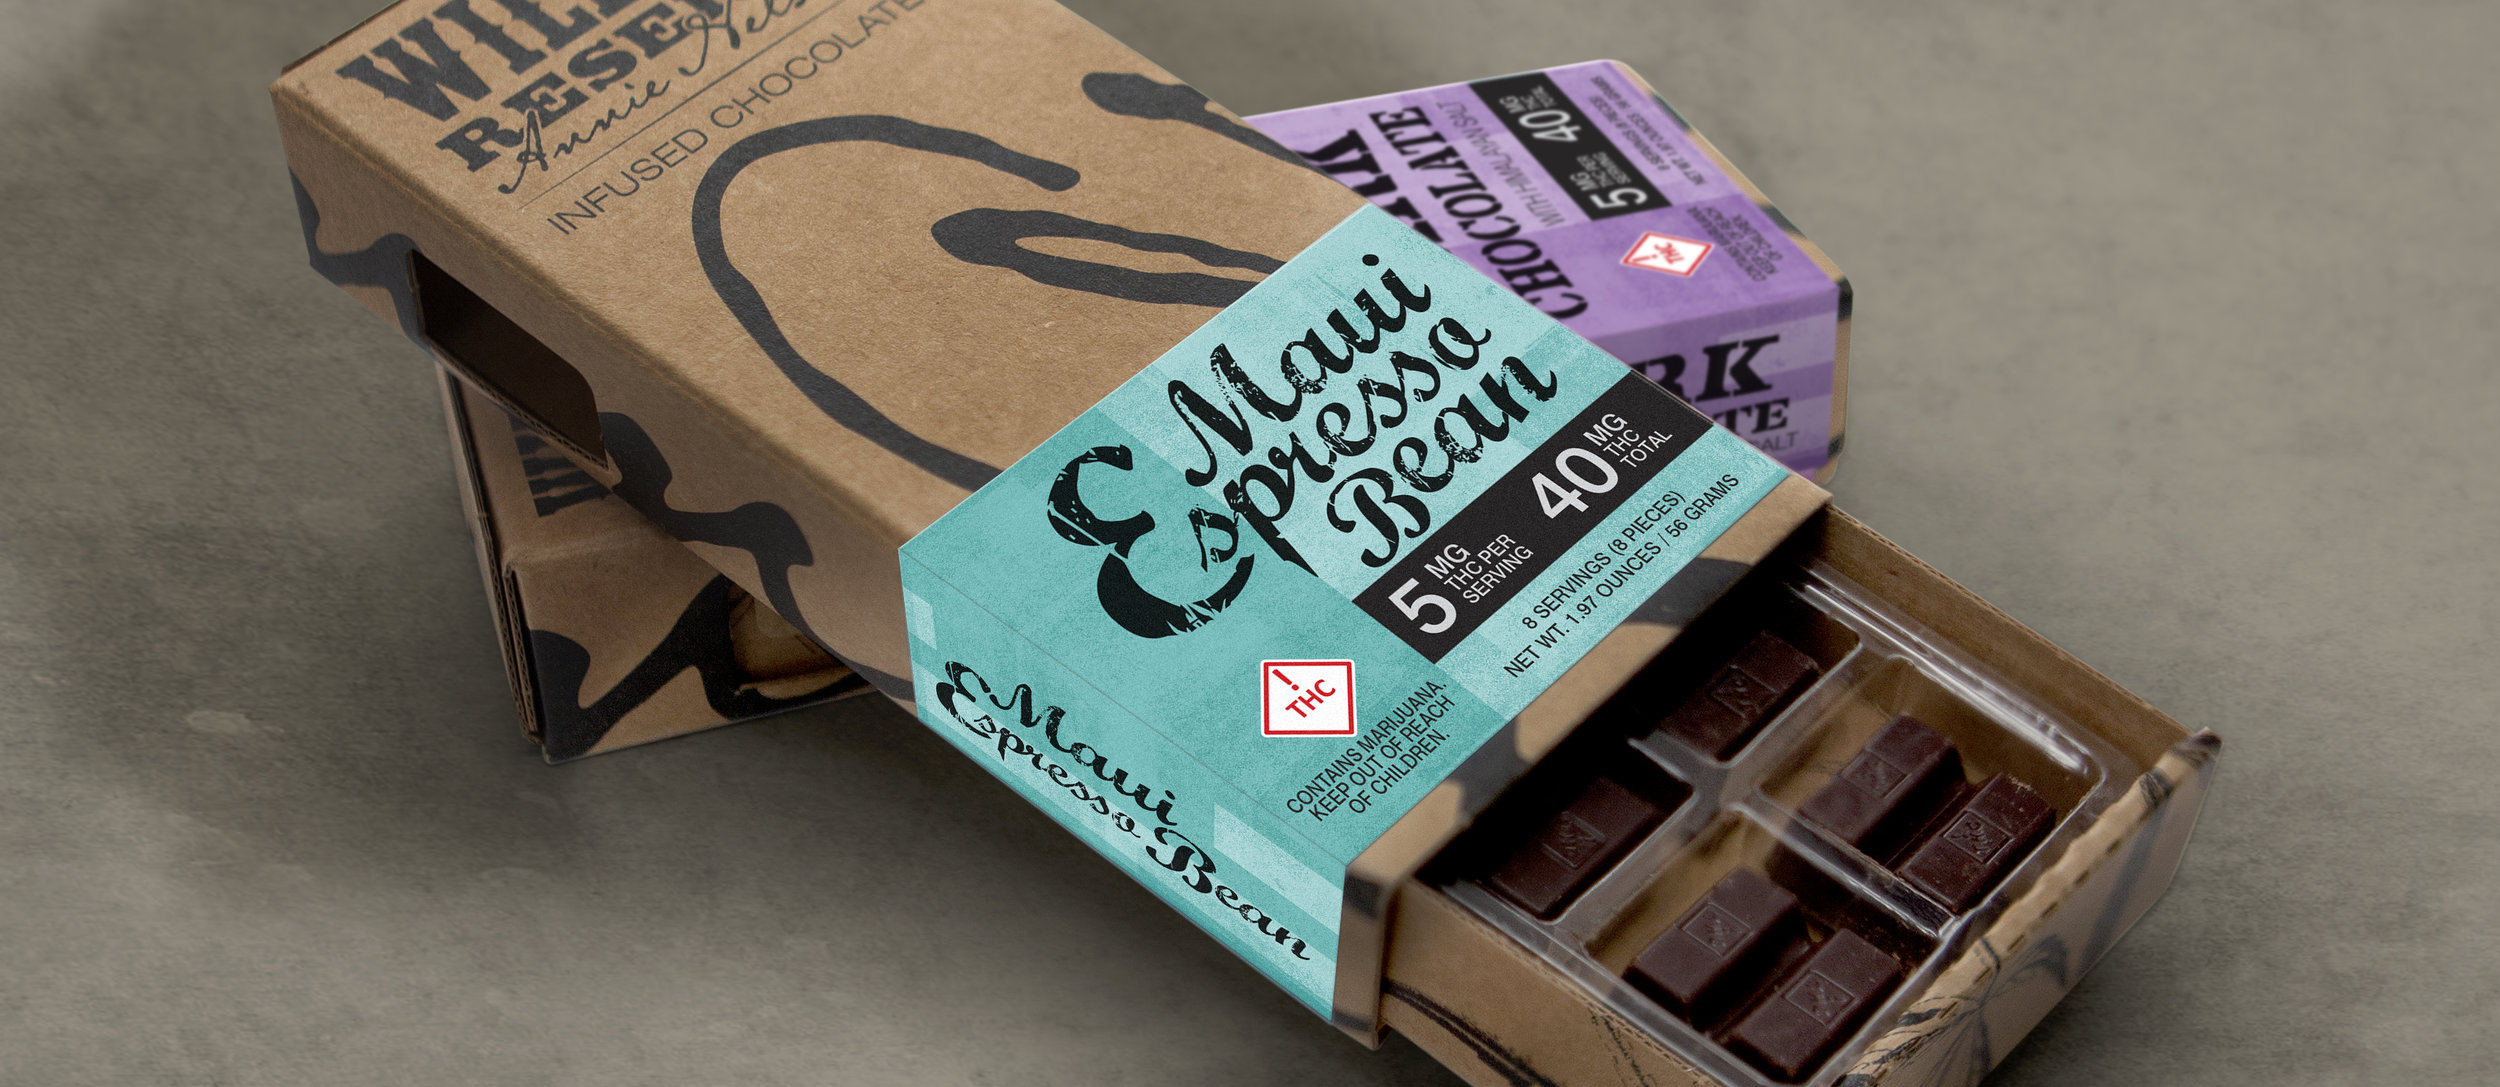 WR - Branding - Packaging - Chocolates - 0918.jpg